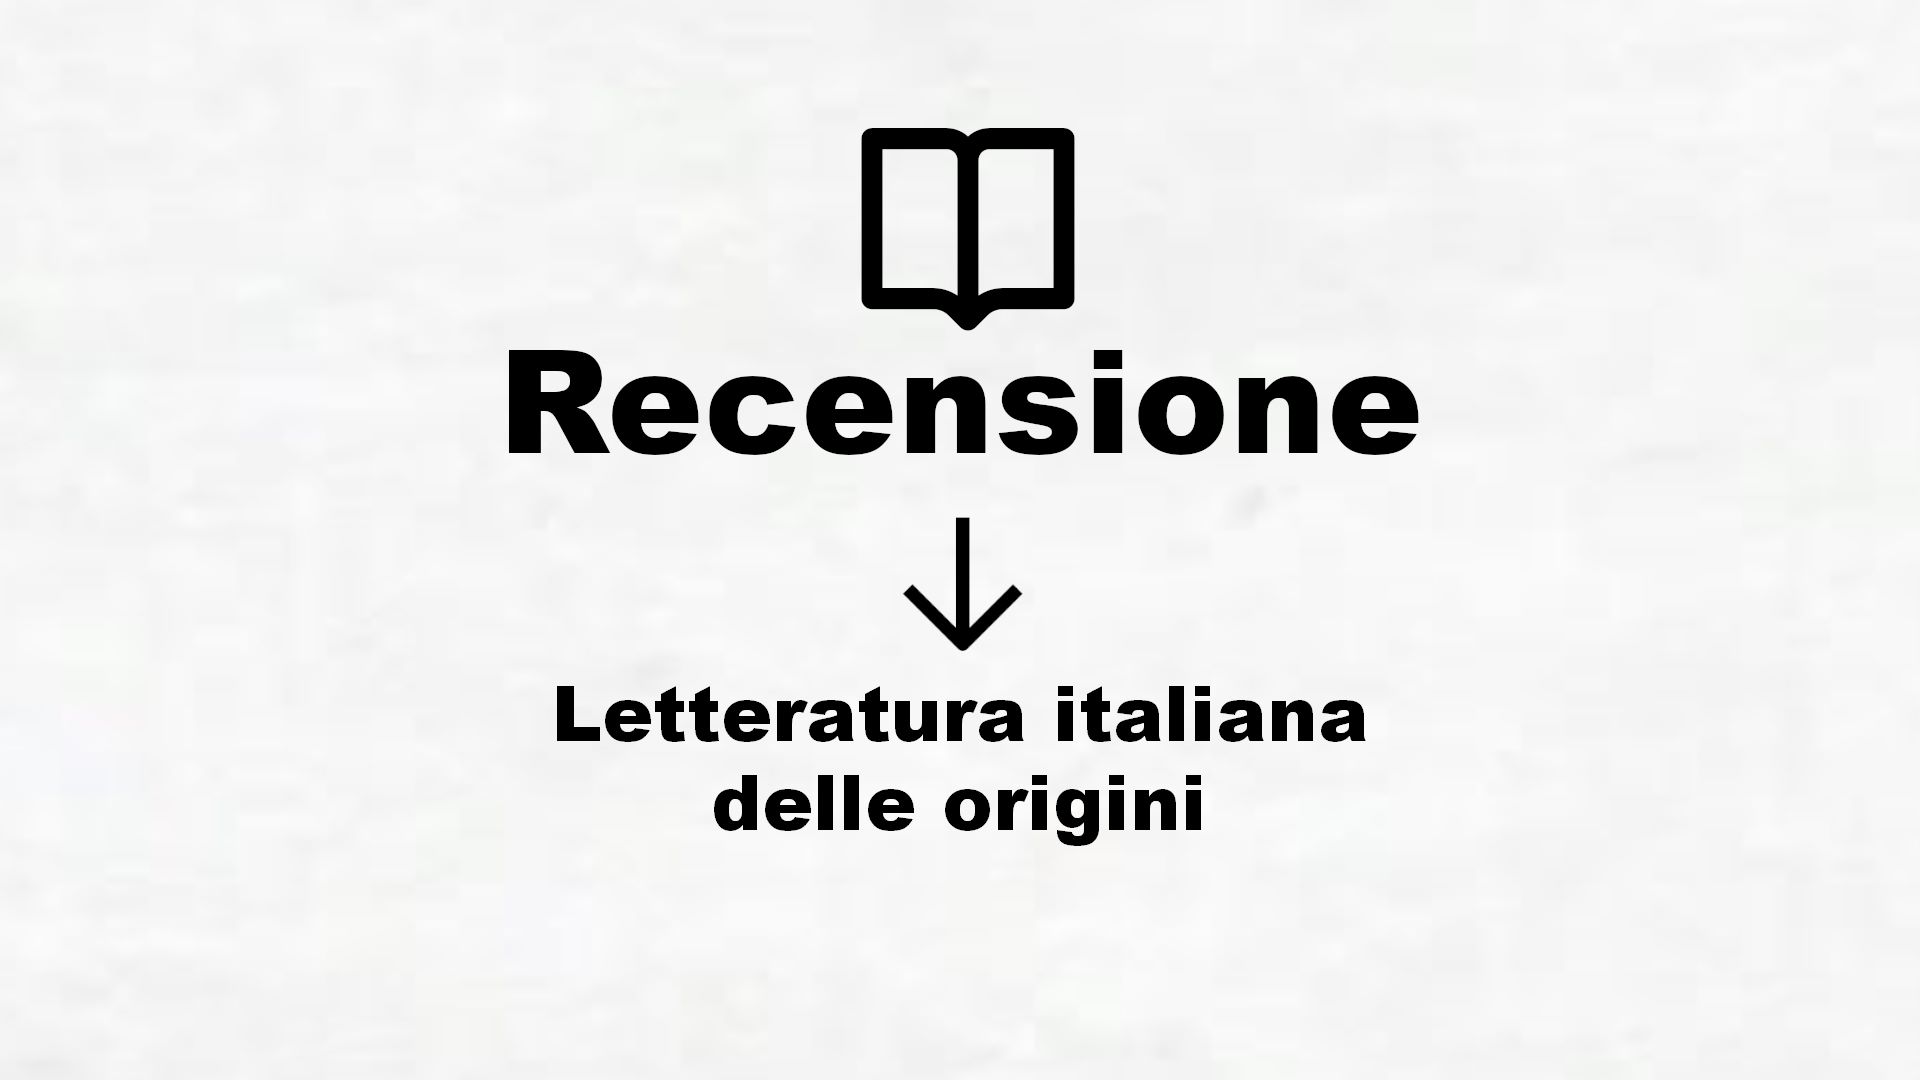 Letteratura italiana delle origini – Recensione Libro